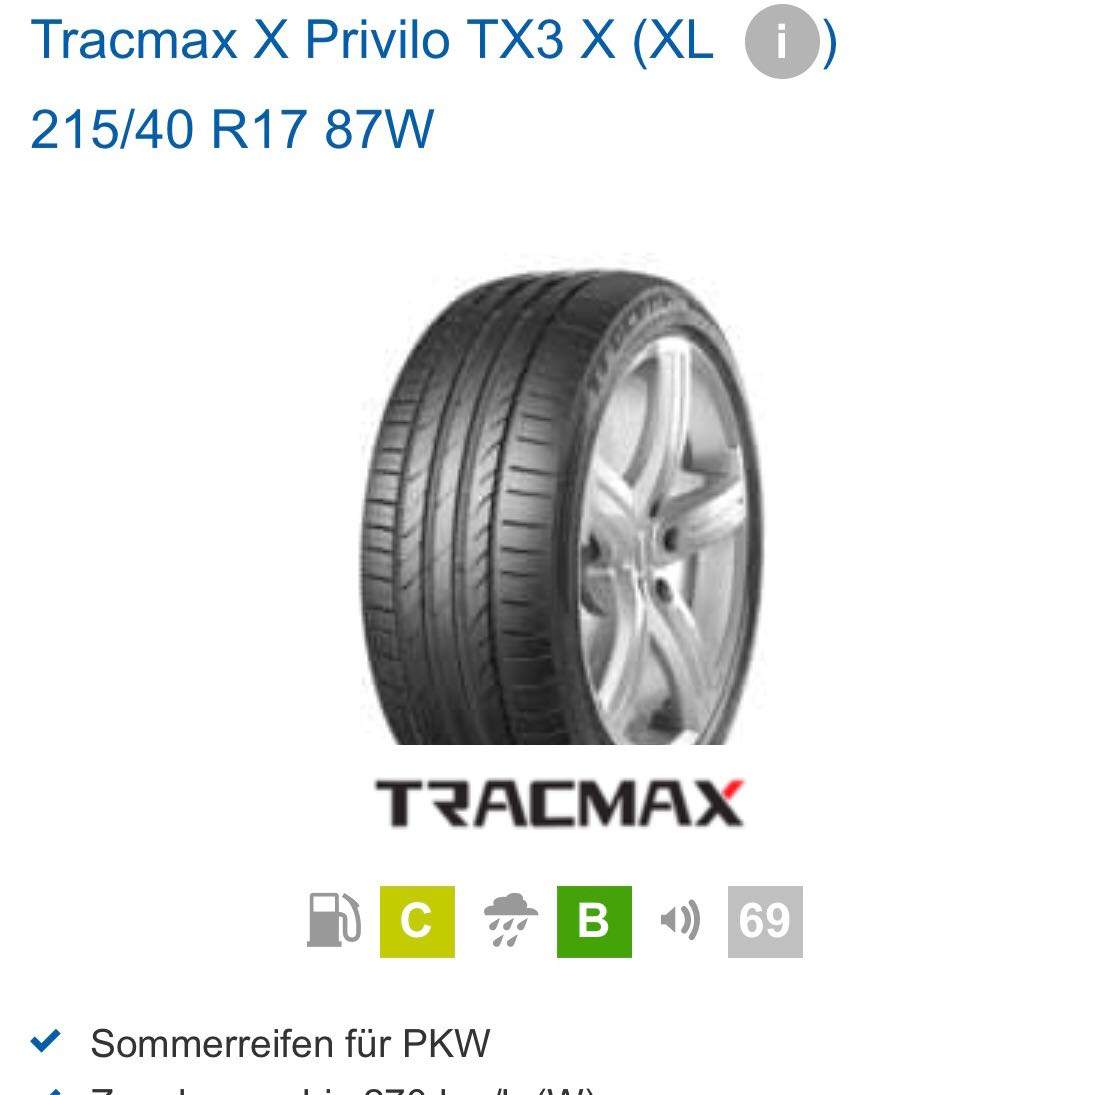 X TX3 Erfahrungen? Reifen X Tracmax und Motorrad, Privilo Sommer) (Auto, Auto